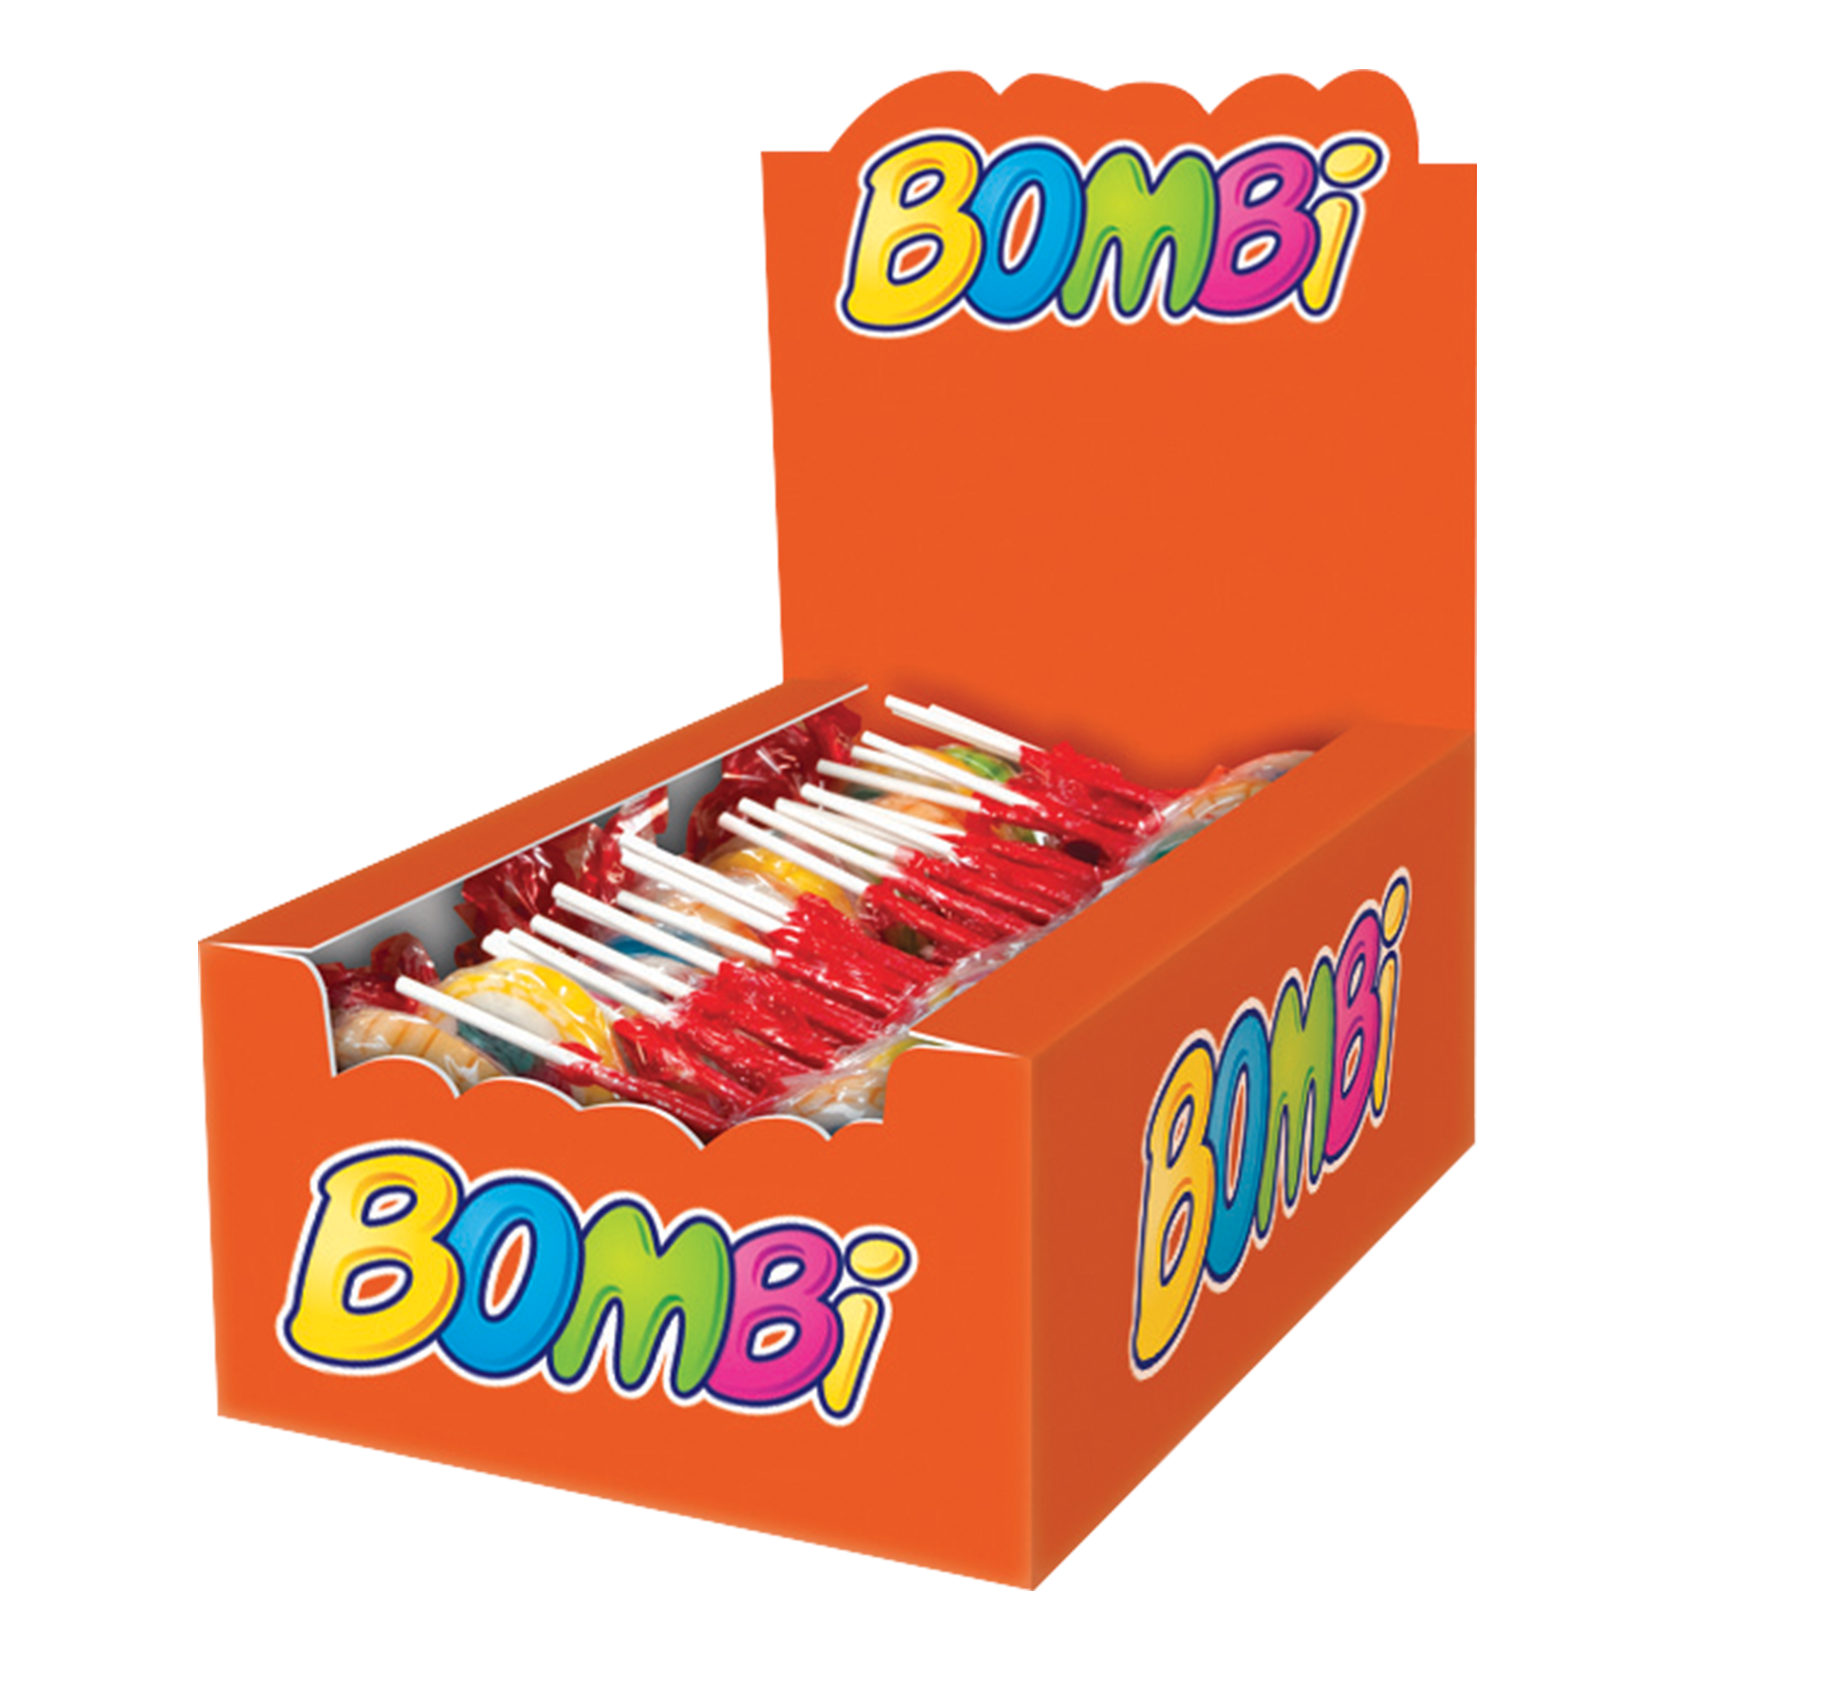 Bombi nyalóka csomagolása